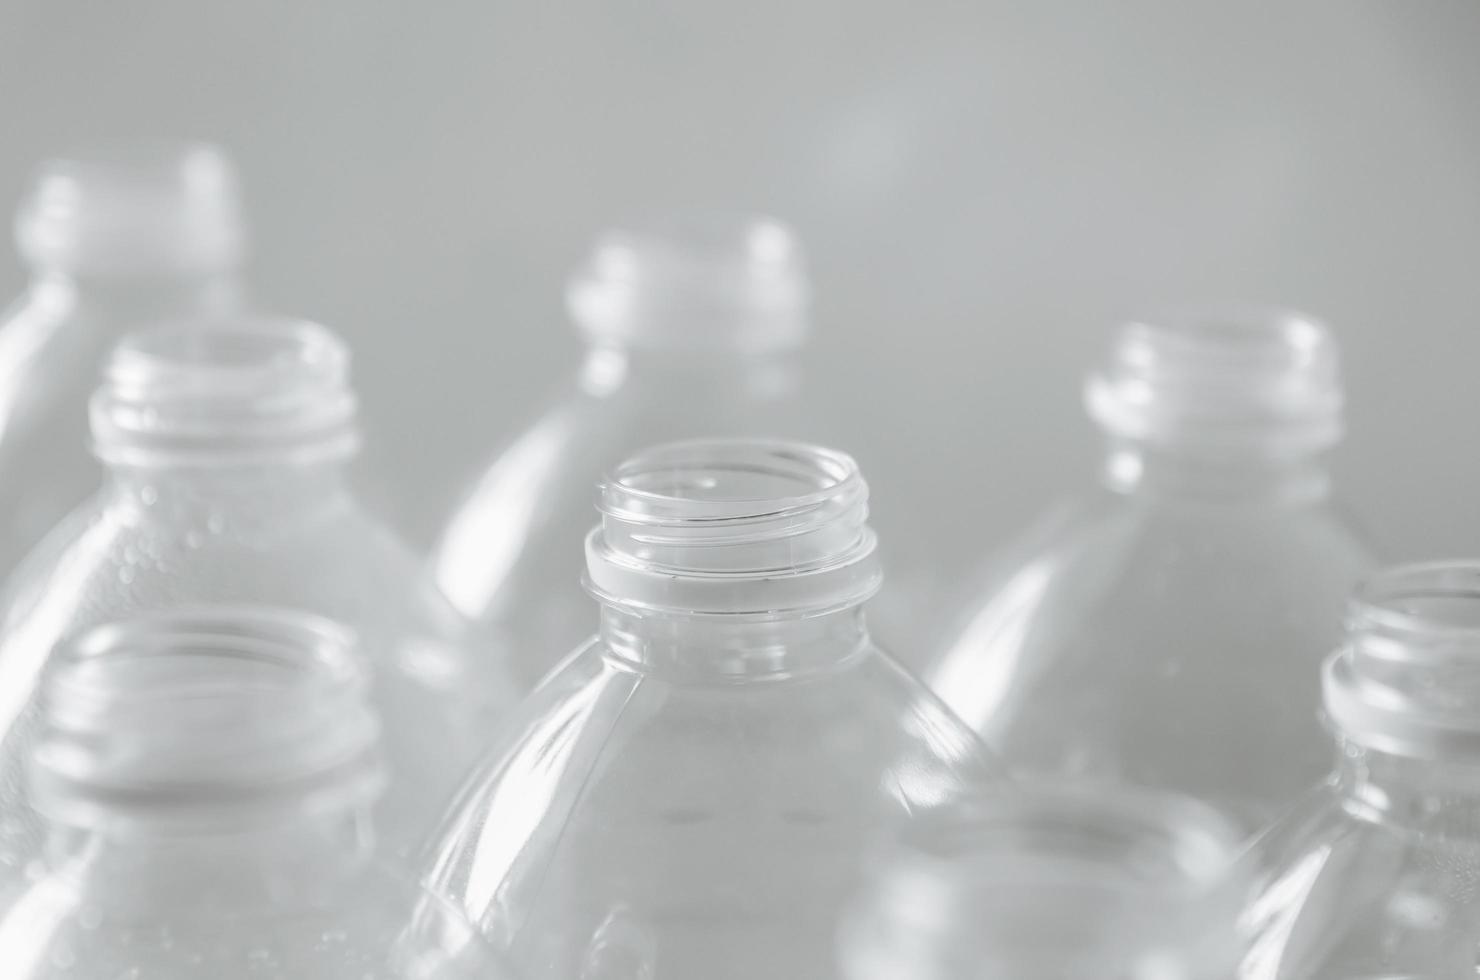 bouteilles vides à recycler, campagne pour réduire le plastique et sauver le monde. photo